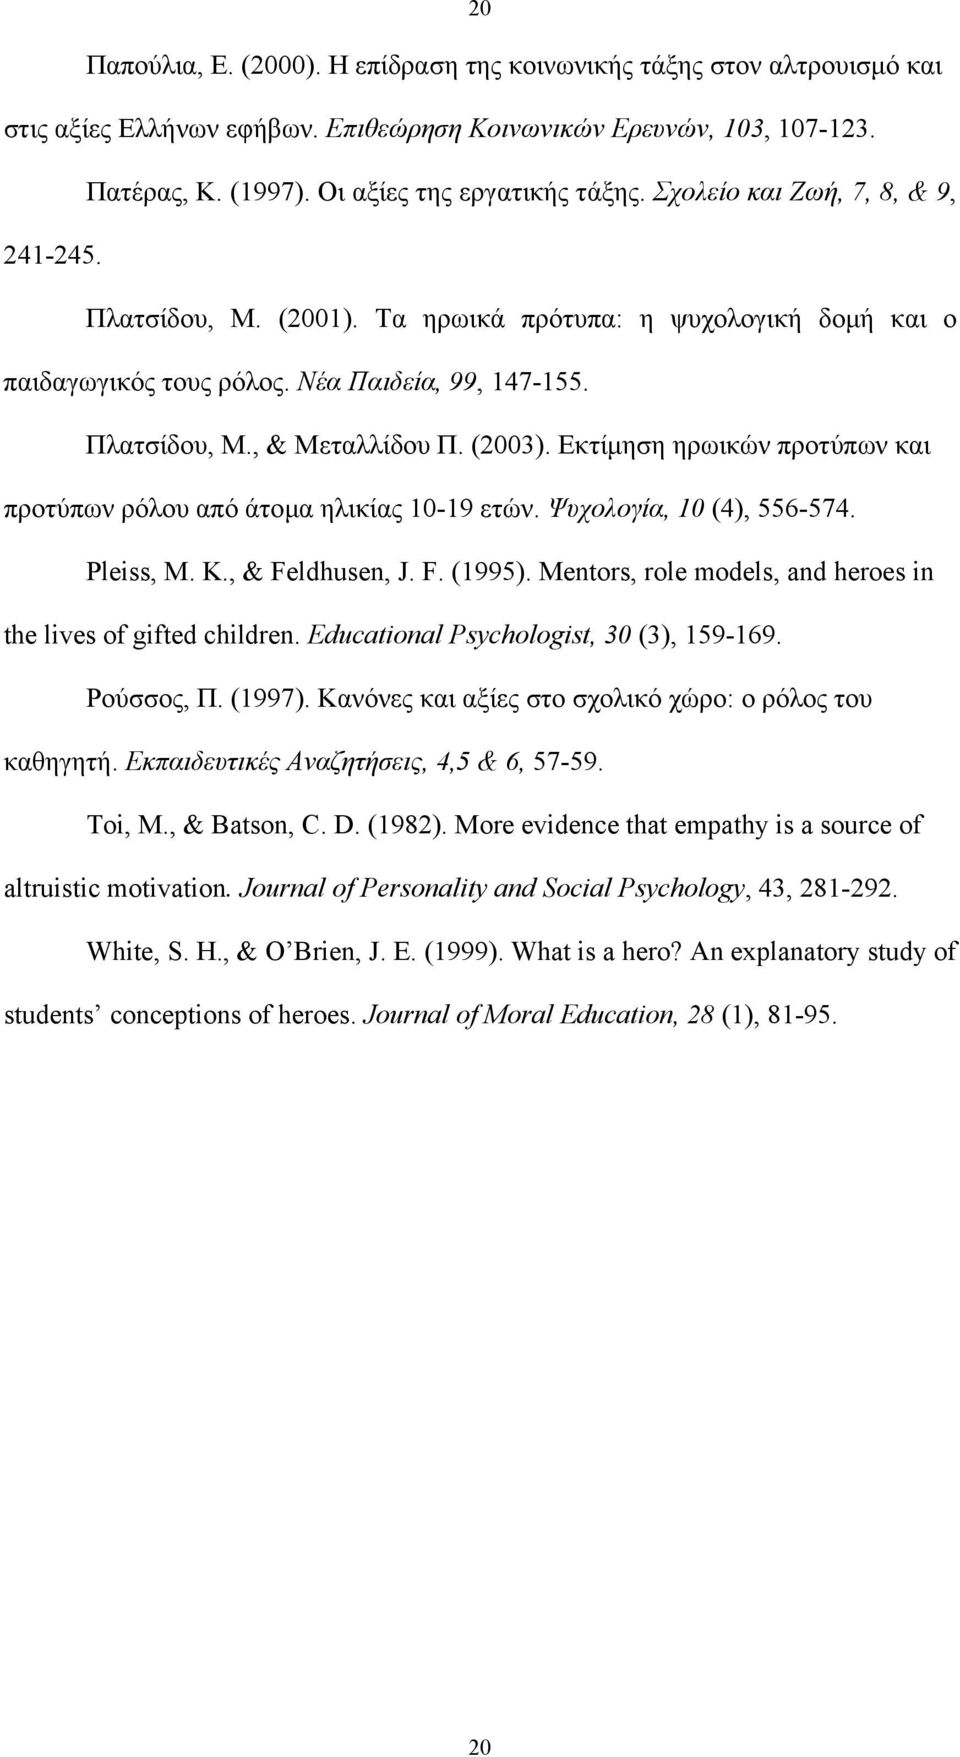 Εκτίµηση ηρωικών προτύπων και προτύπων ρόλου από άτοµα ηλικίας 10-19 ετών. Ψυχολογία, 10 (4), 556-574. Pleiss, M. K., & Feldhusen, J. F. (1995).